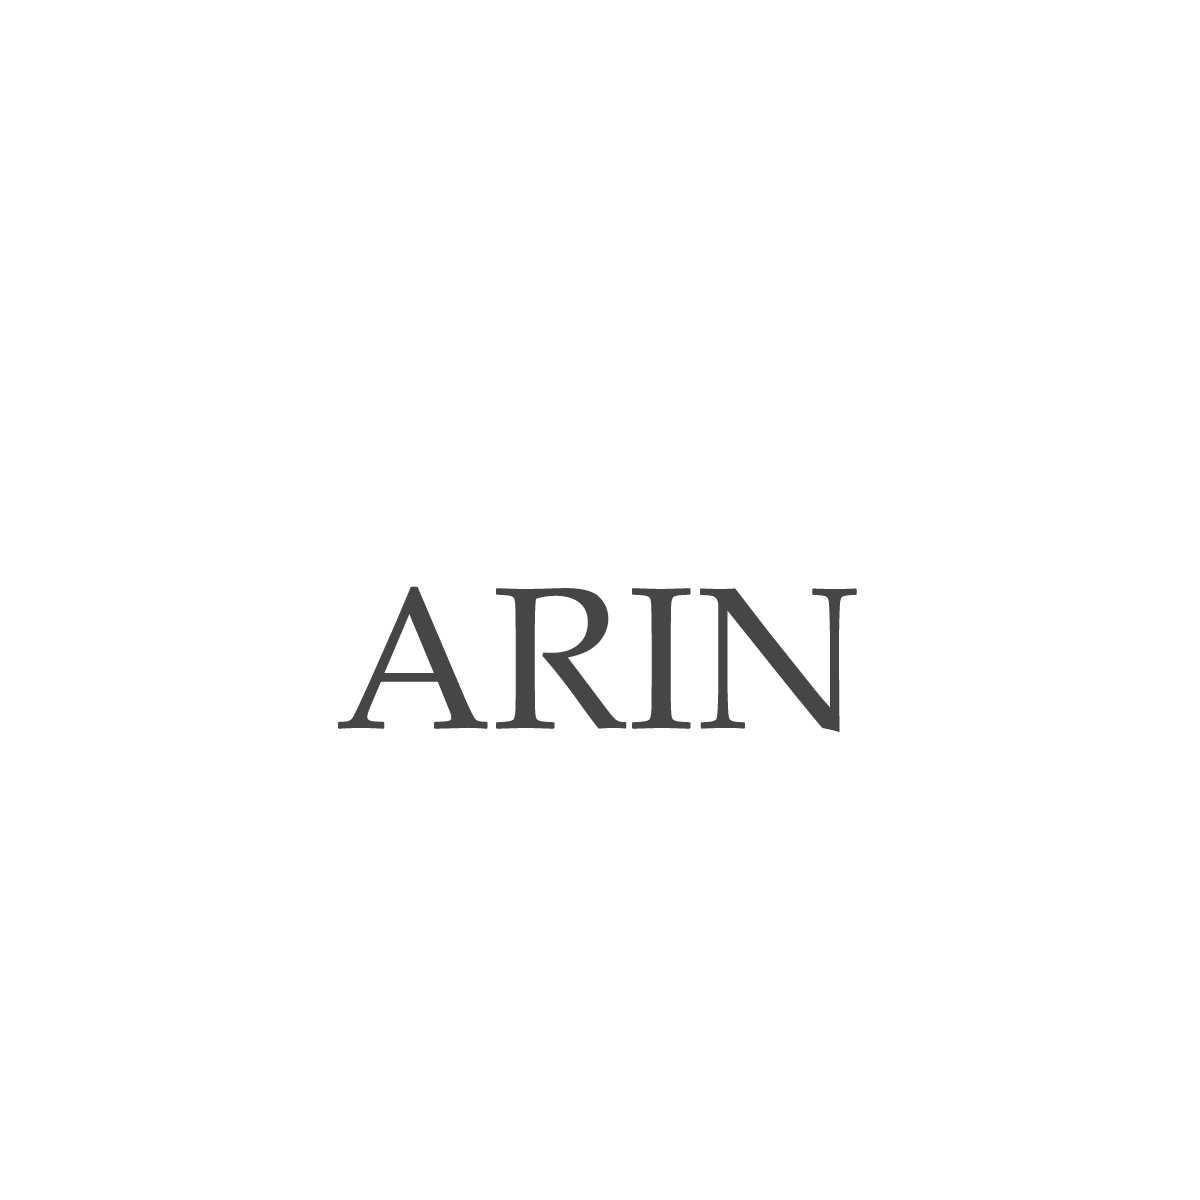 arin